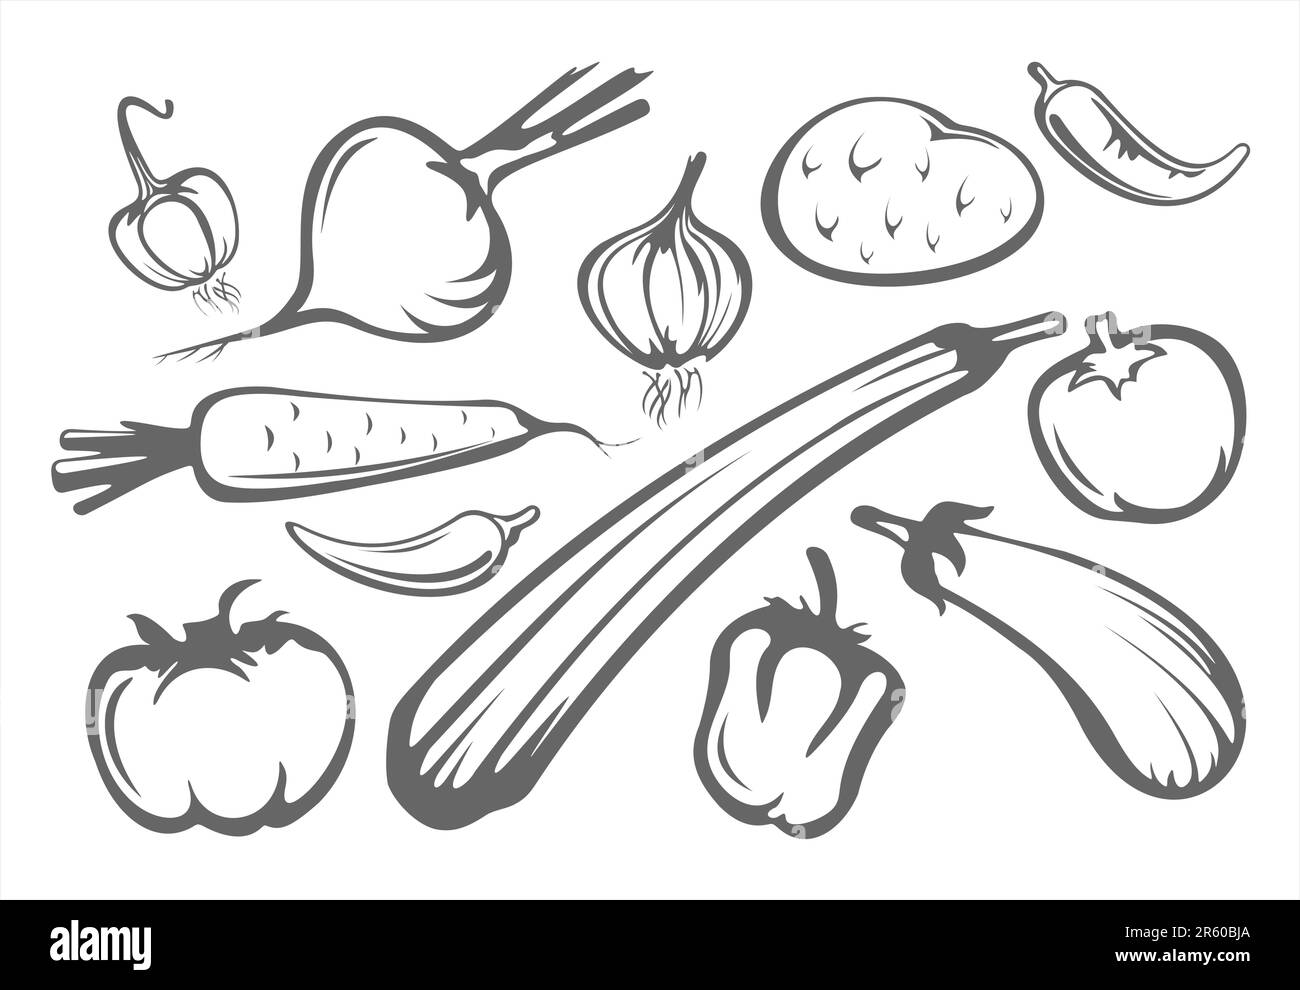 Die stilisierten Tomaten, Pfeffer, Aubergine, Zwiebel, Knoblauch, Kartoffeln und Zucchini, isoliert auf weißem Hintergrund. Stock Vektor